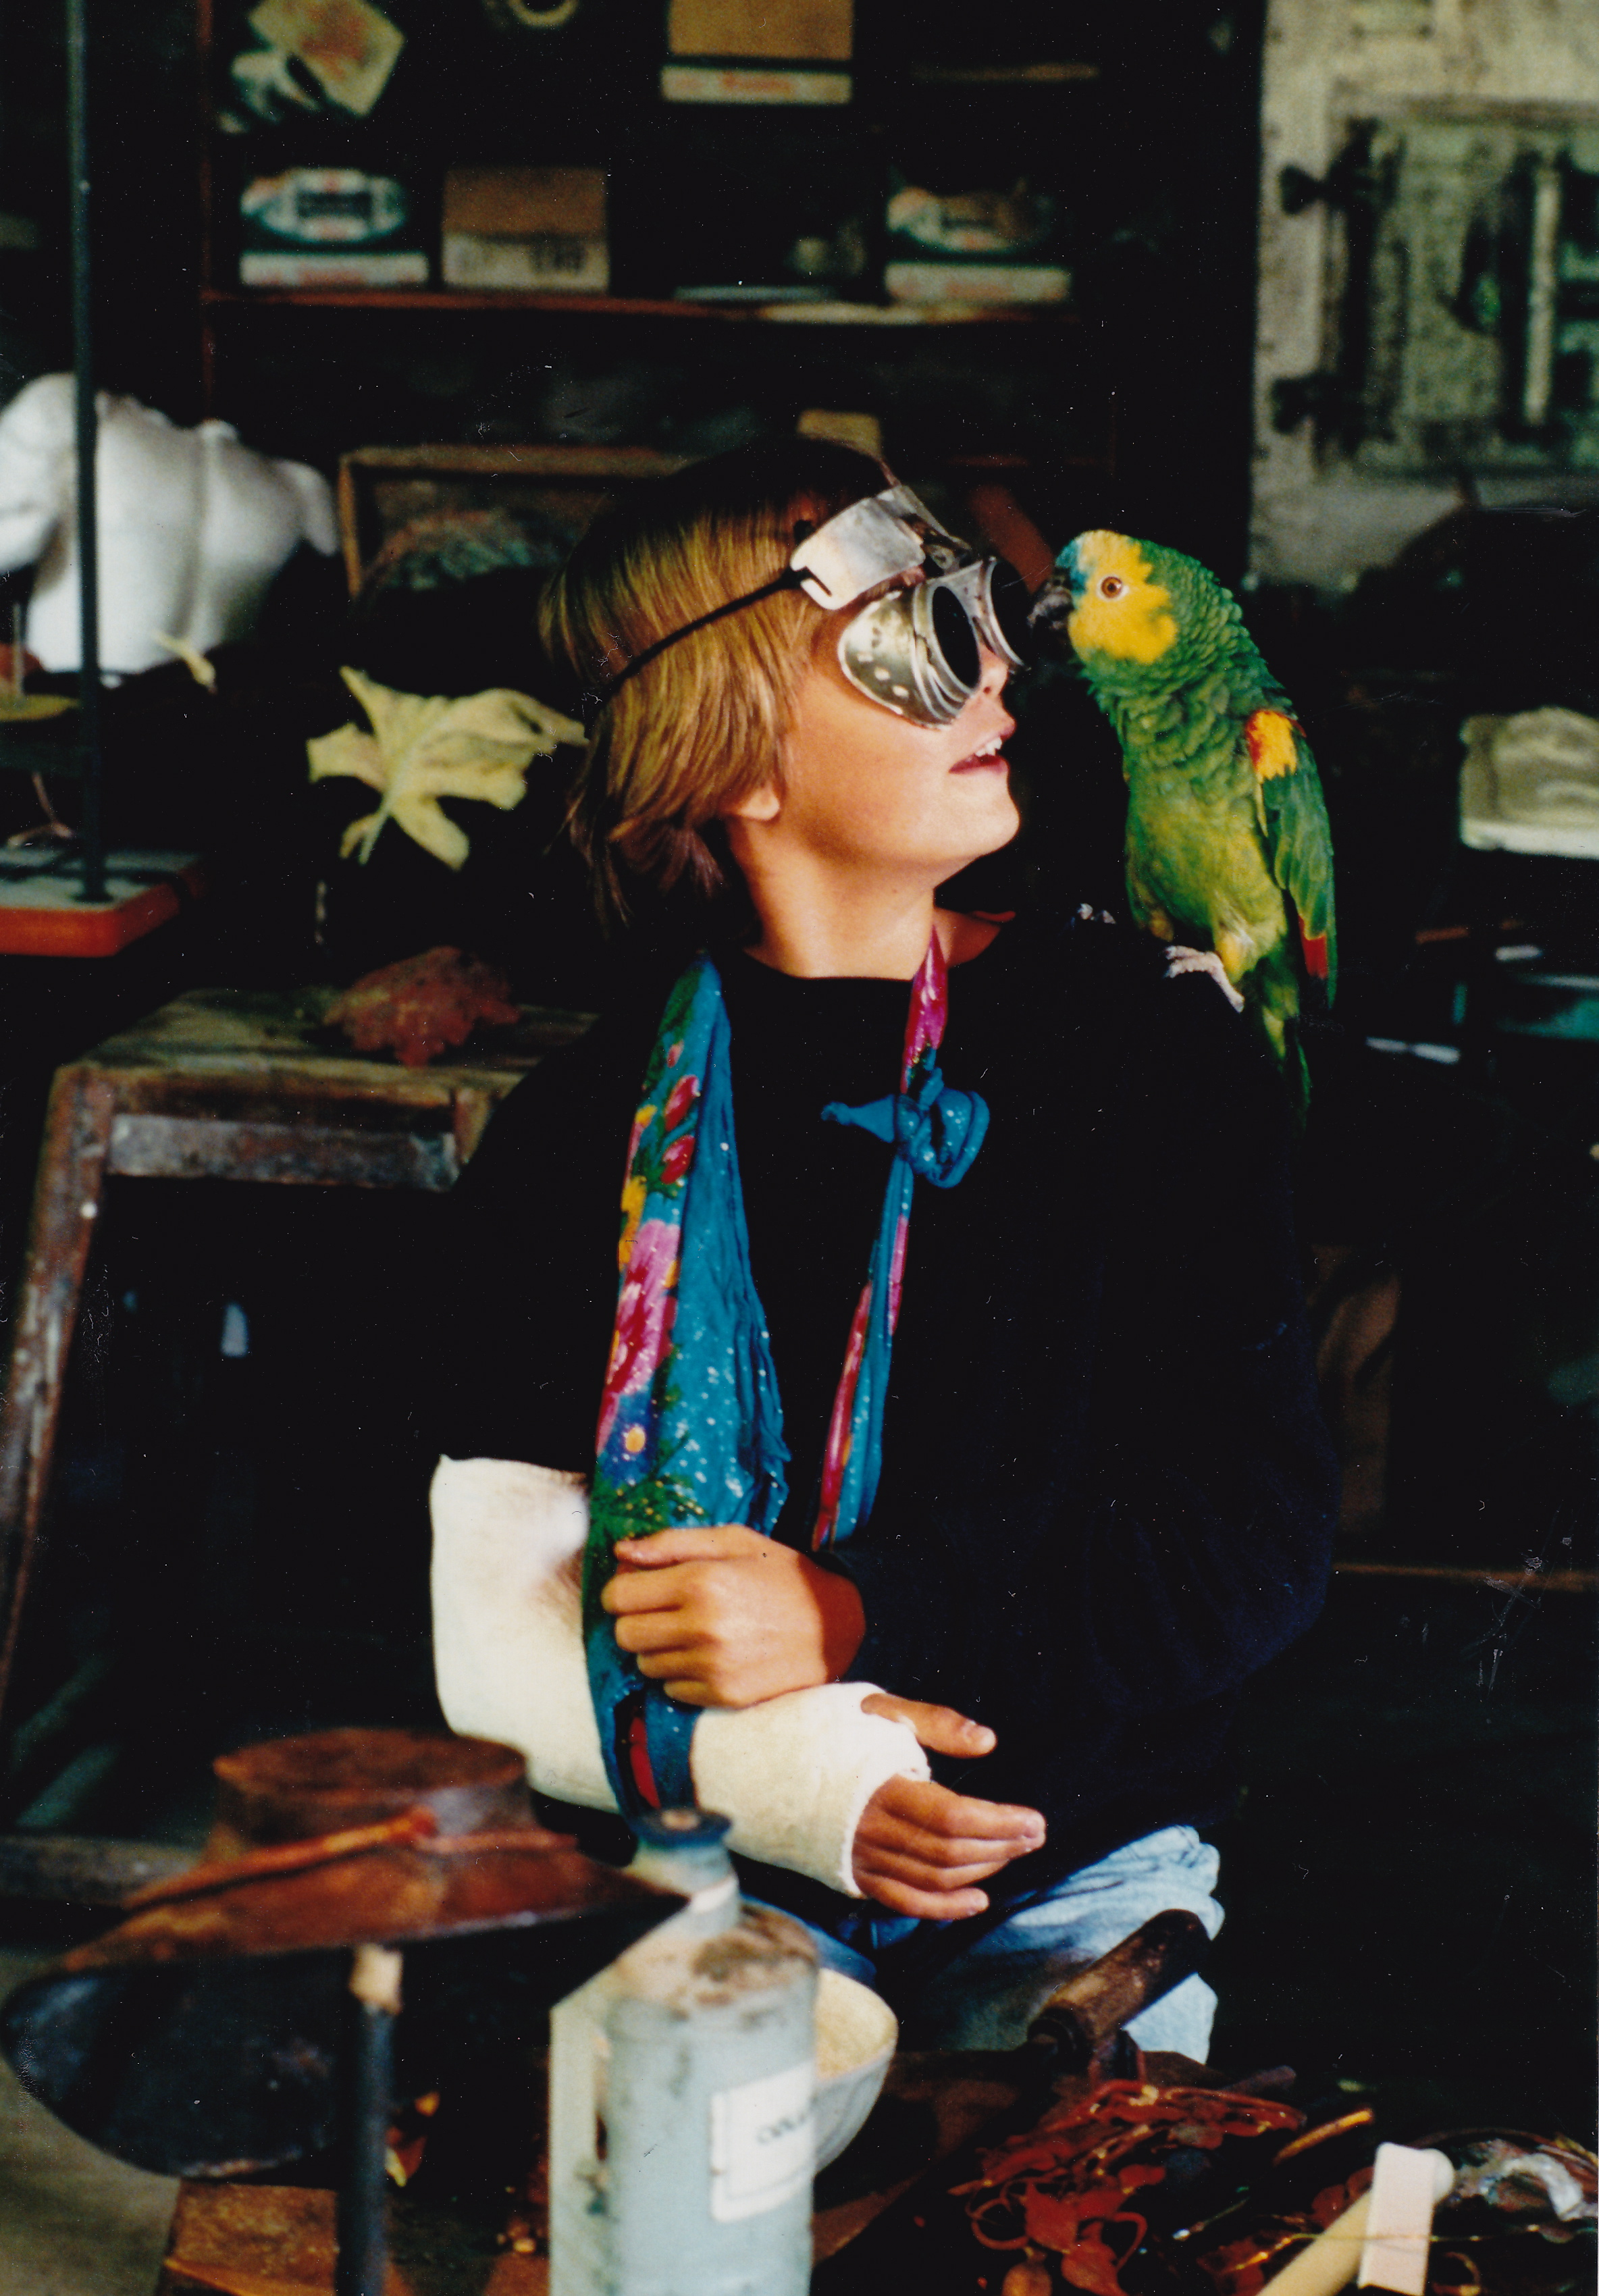 Auf dem Foto ist die Künstlerin Clémentine de Chabaneix als junges Mädchen zu sehen. Sie trägt den rechten Arm in Gips. Auf iherer linken Schulter sitzt ein grüner Papagei namens Willy.